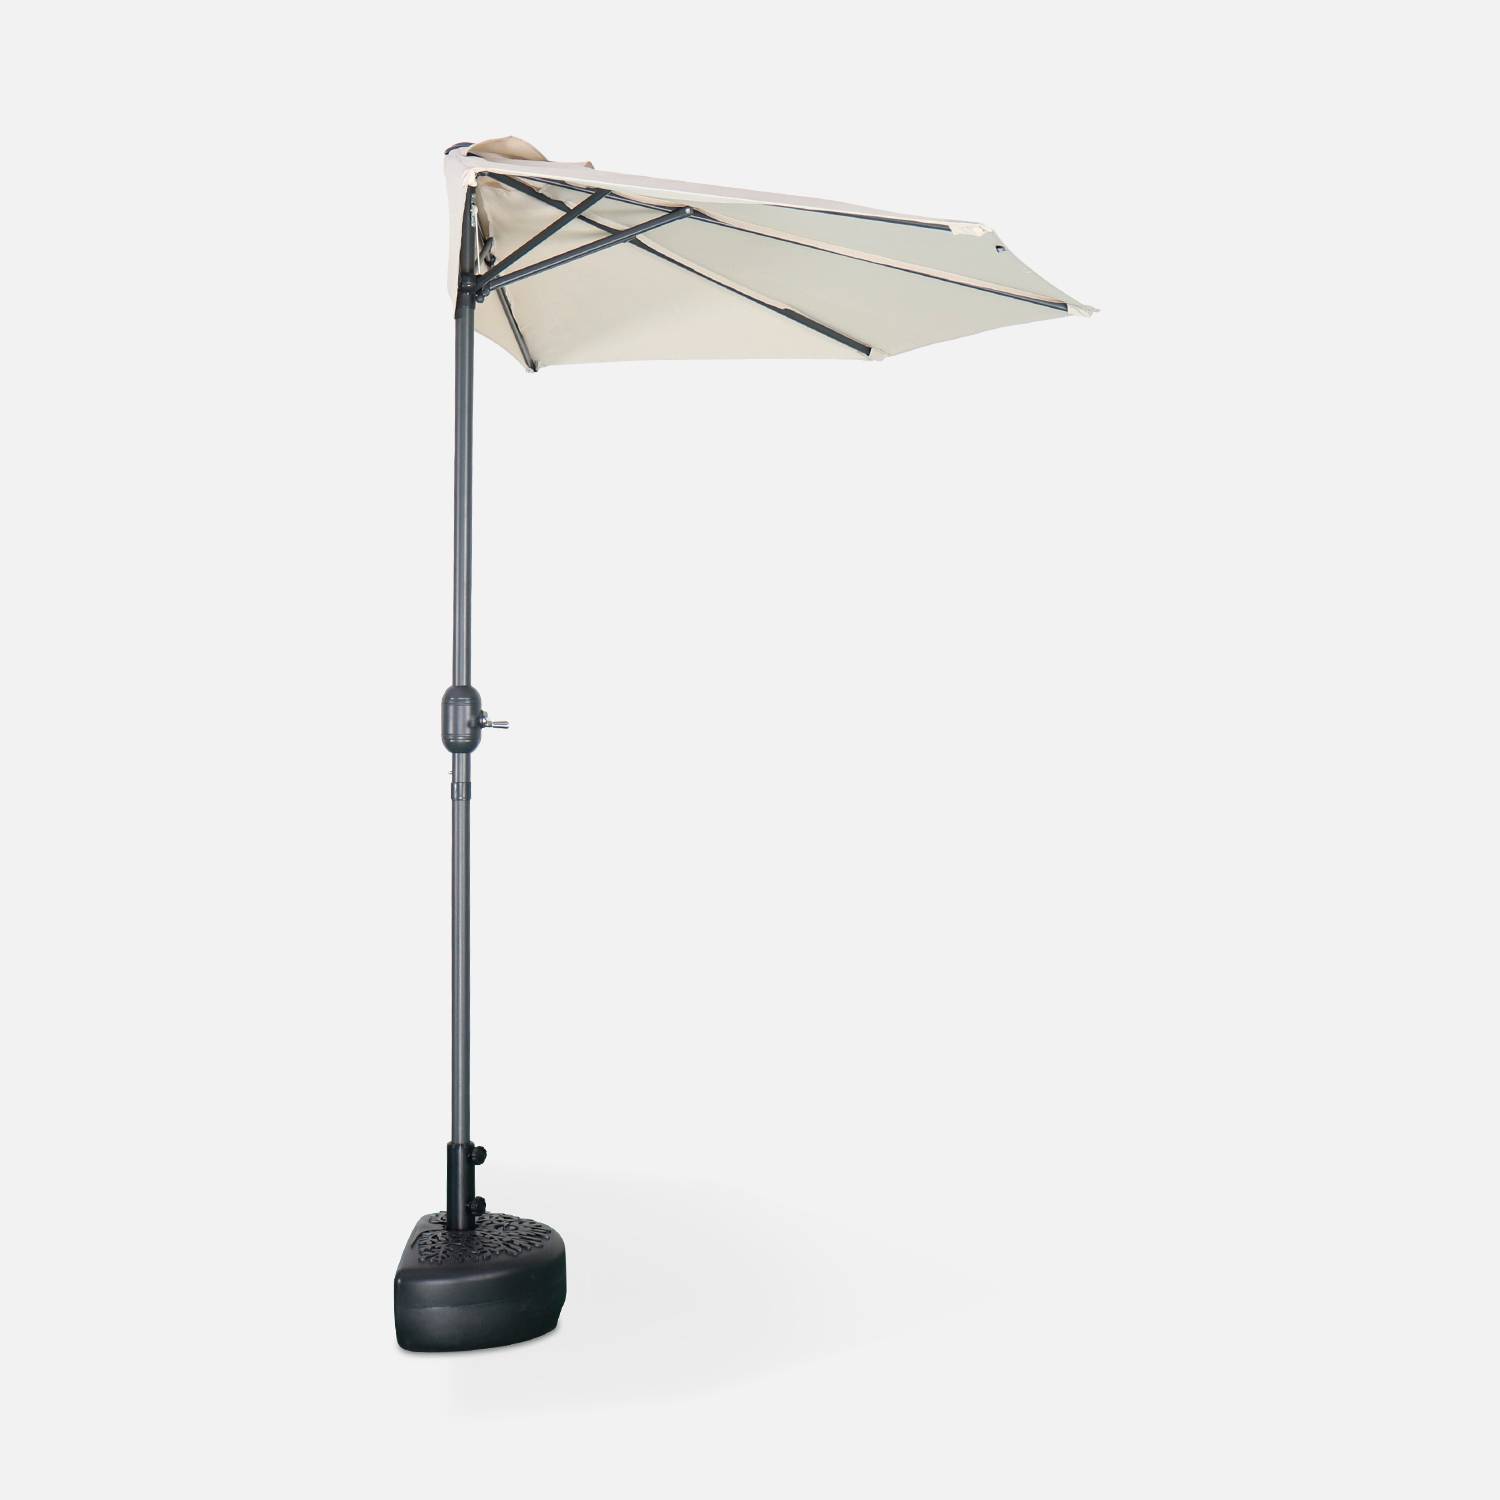  Parasol de balcon Ø250cm  – CALVI – Demi-parasol droit, mât en aluminium avec manivelle d’ouverture, toile sable Photo3